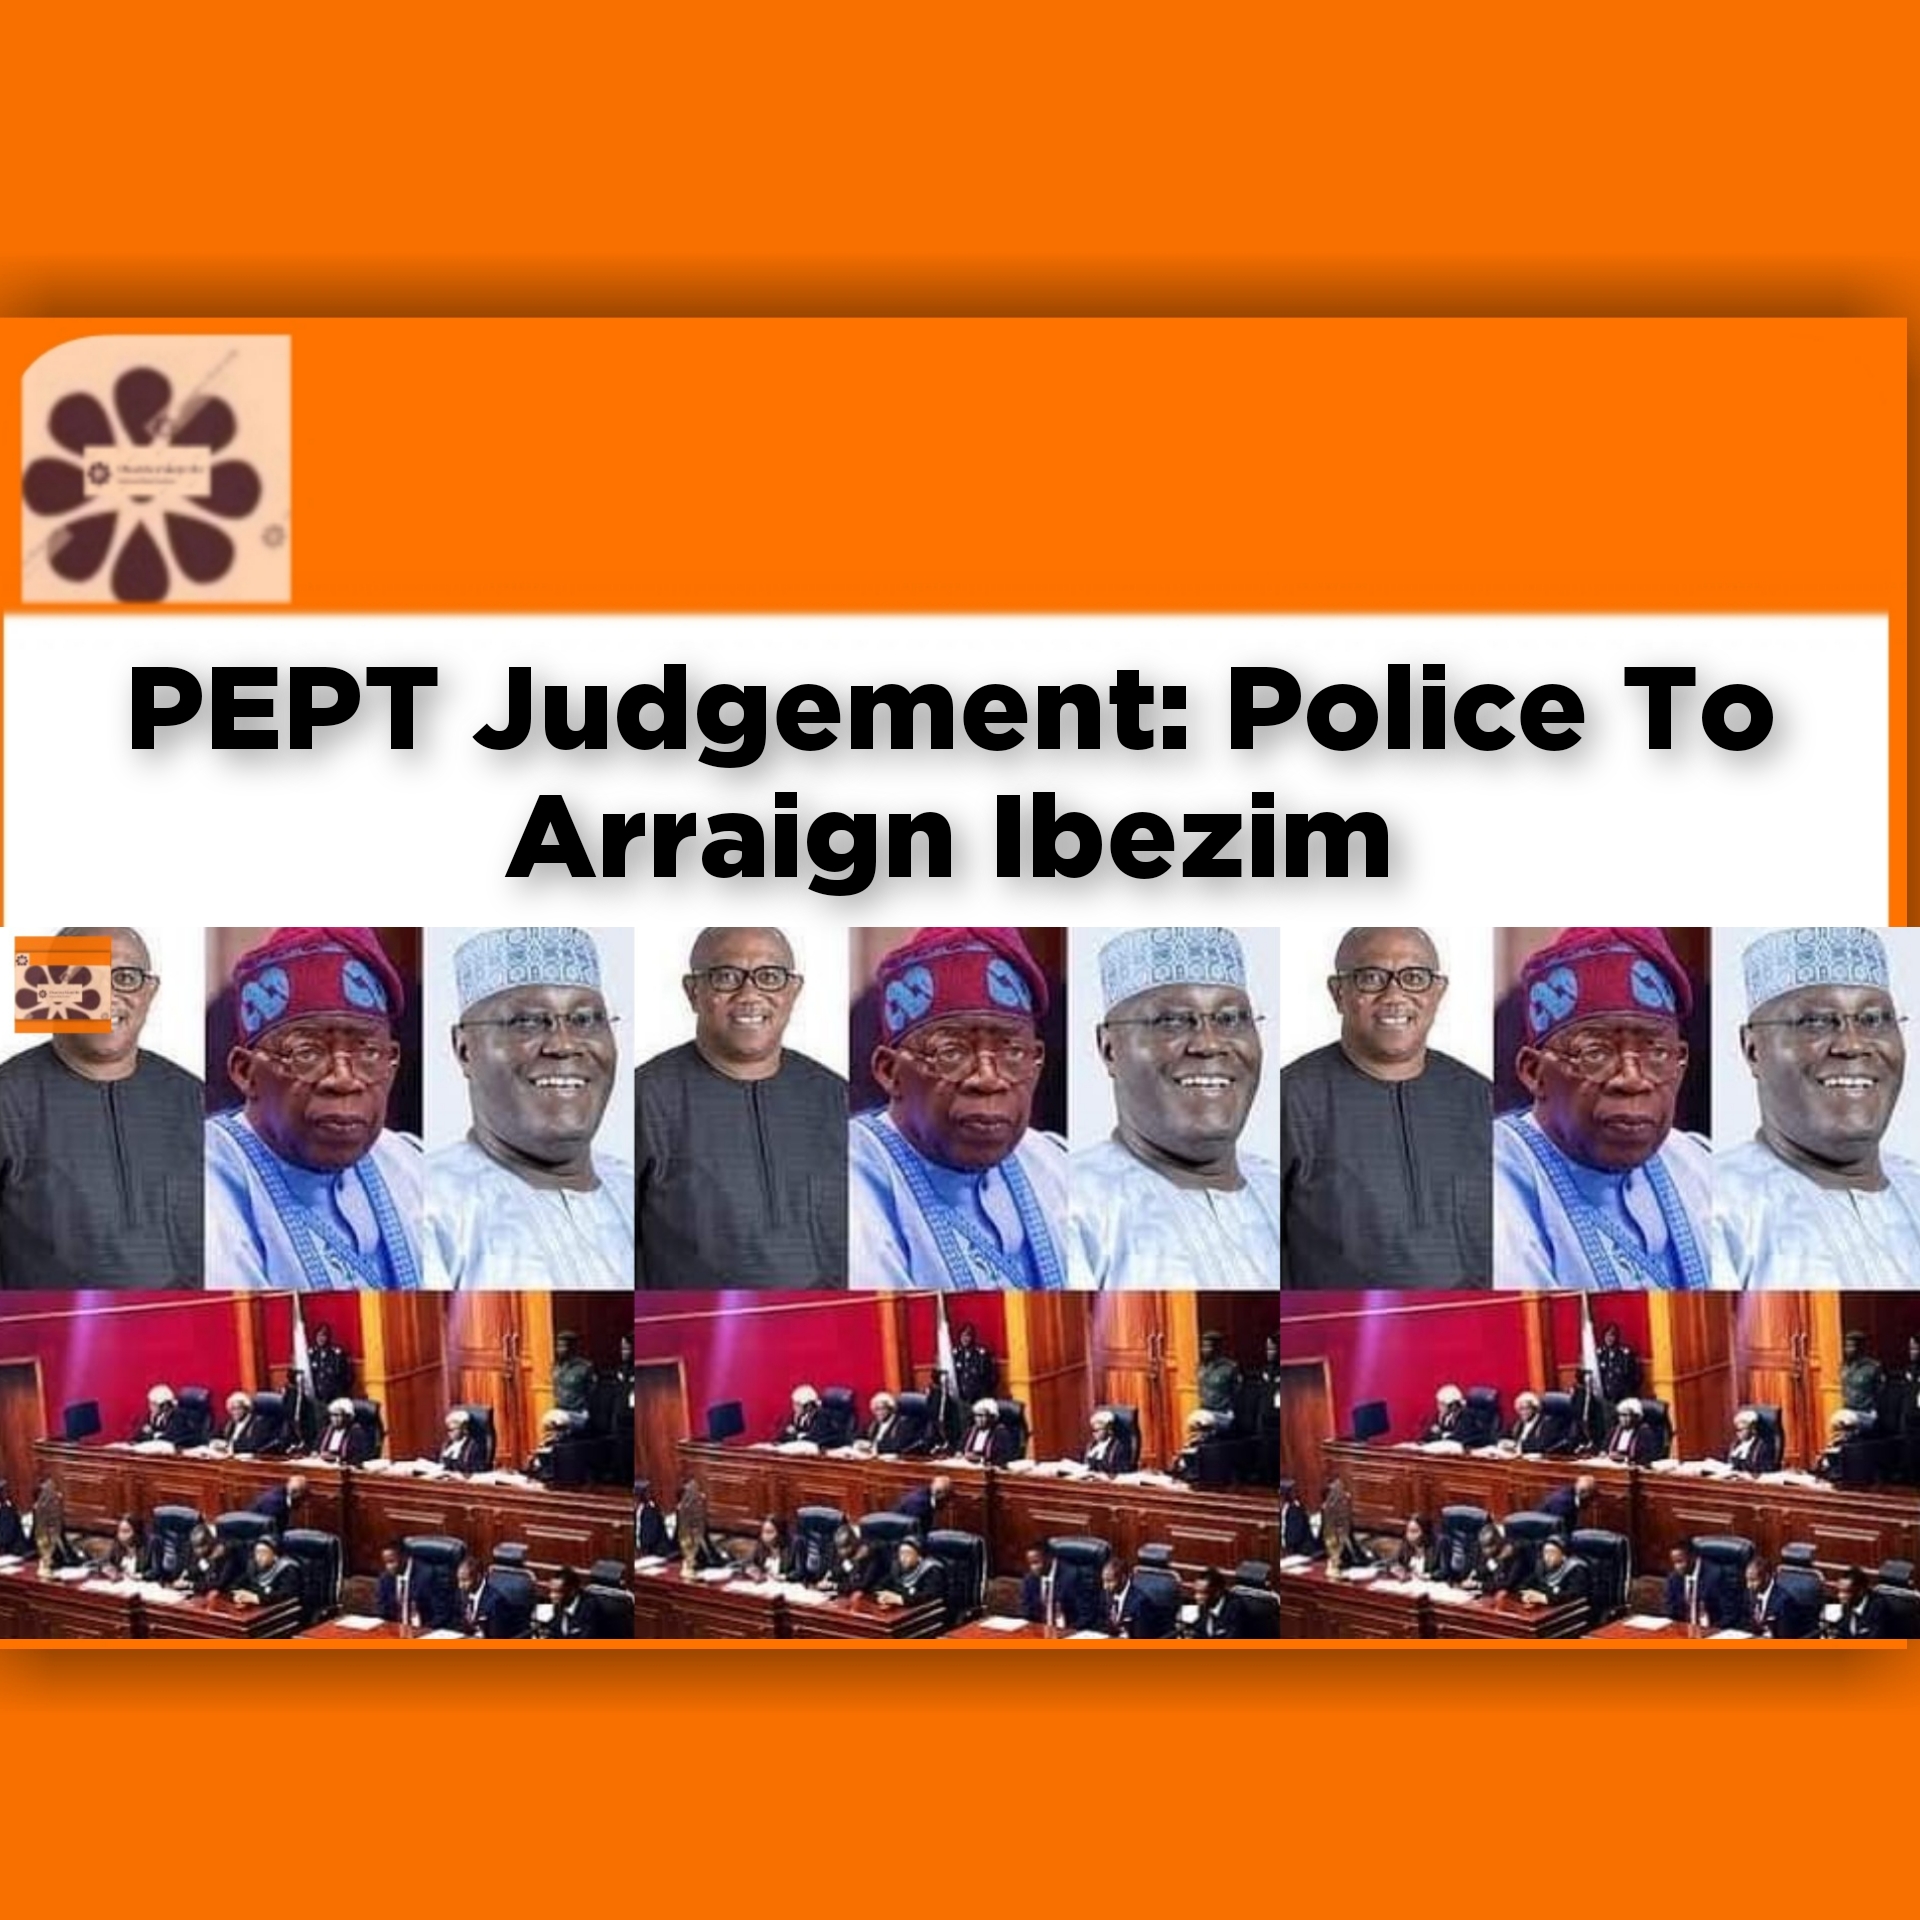 PEPT Judgement: Police To Arraign Ibezim ~ OsazuwaAkonedo #2023Election #Babatunde #Chile #Emmanuel #Fashola #Ibezim #PEPT #Tribunal